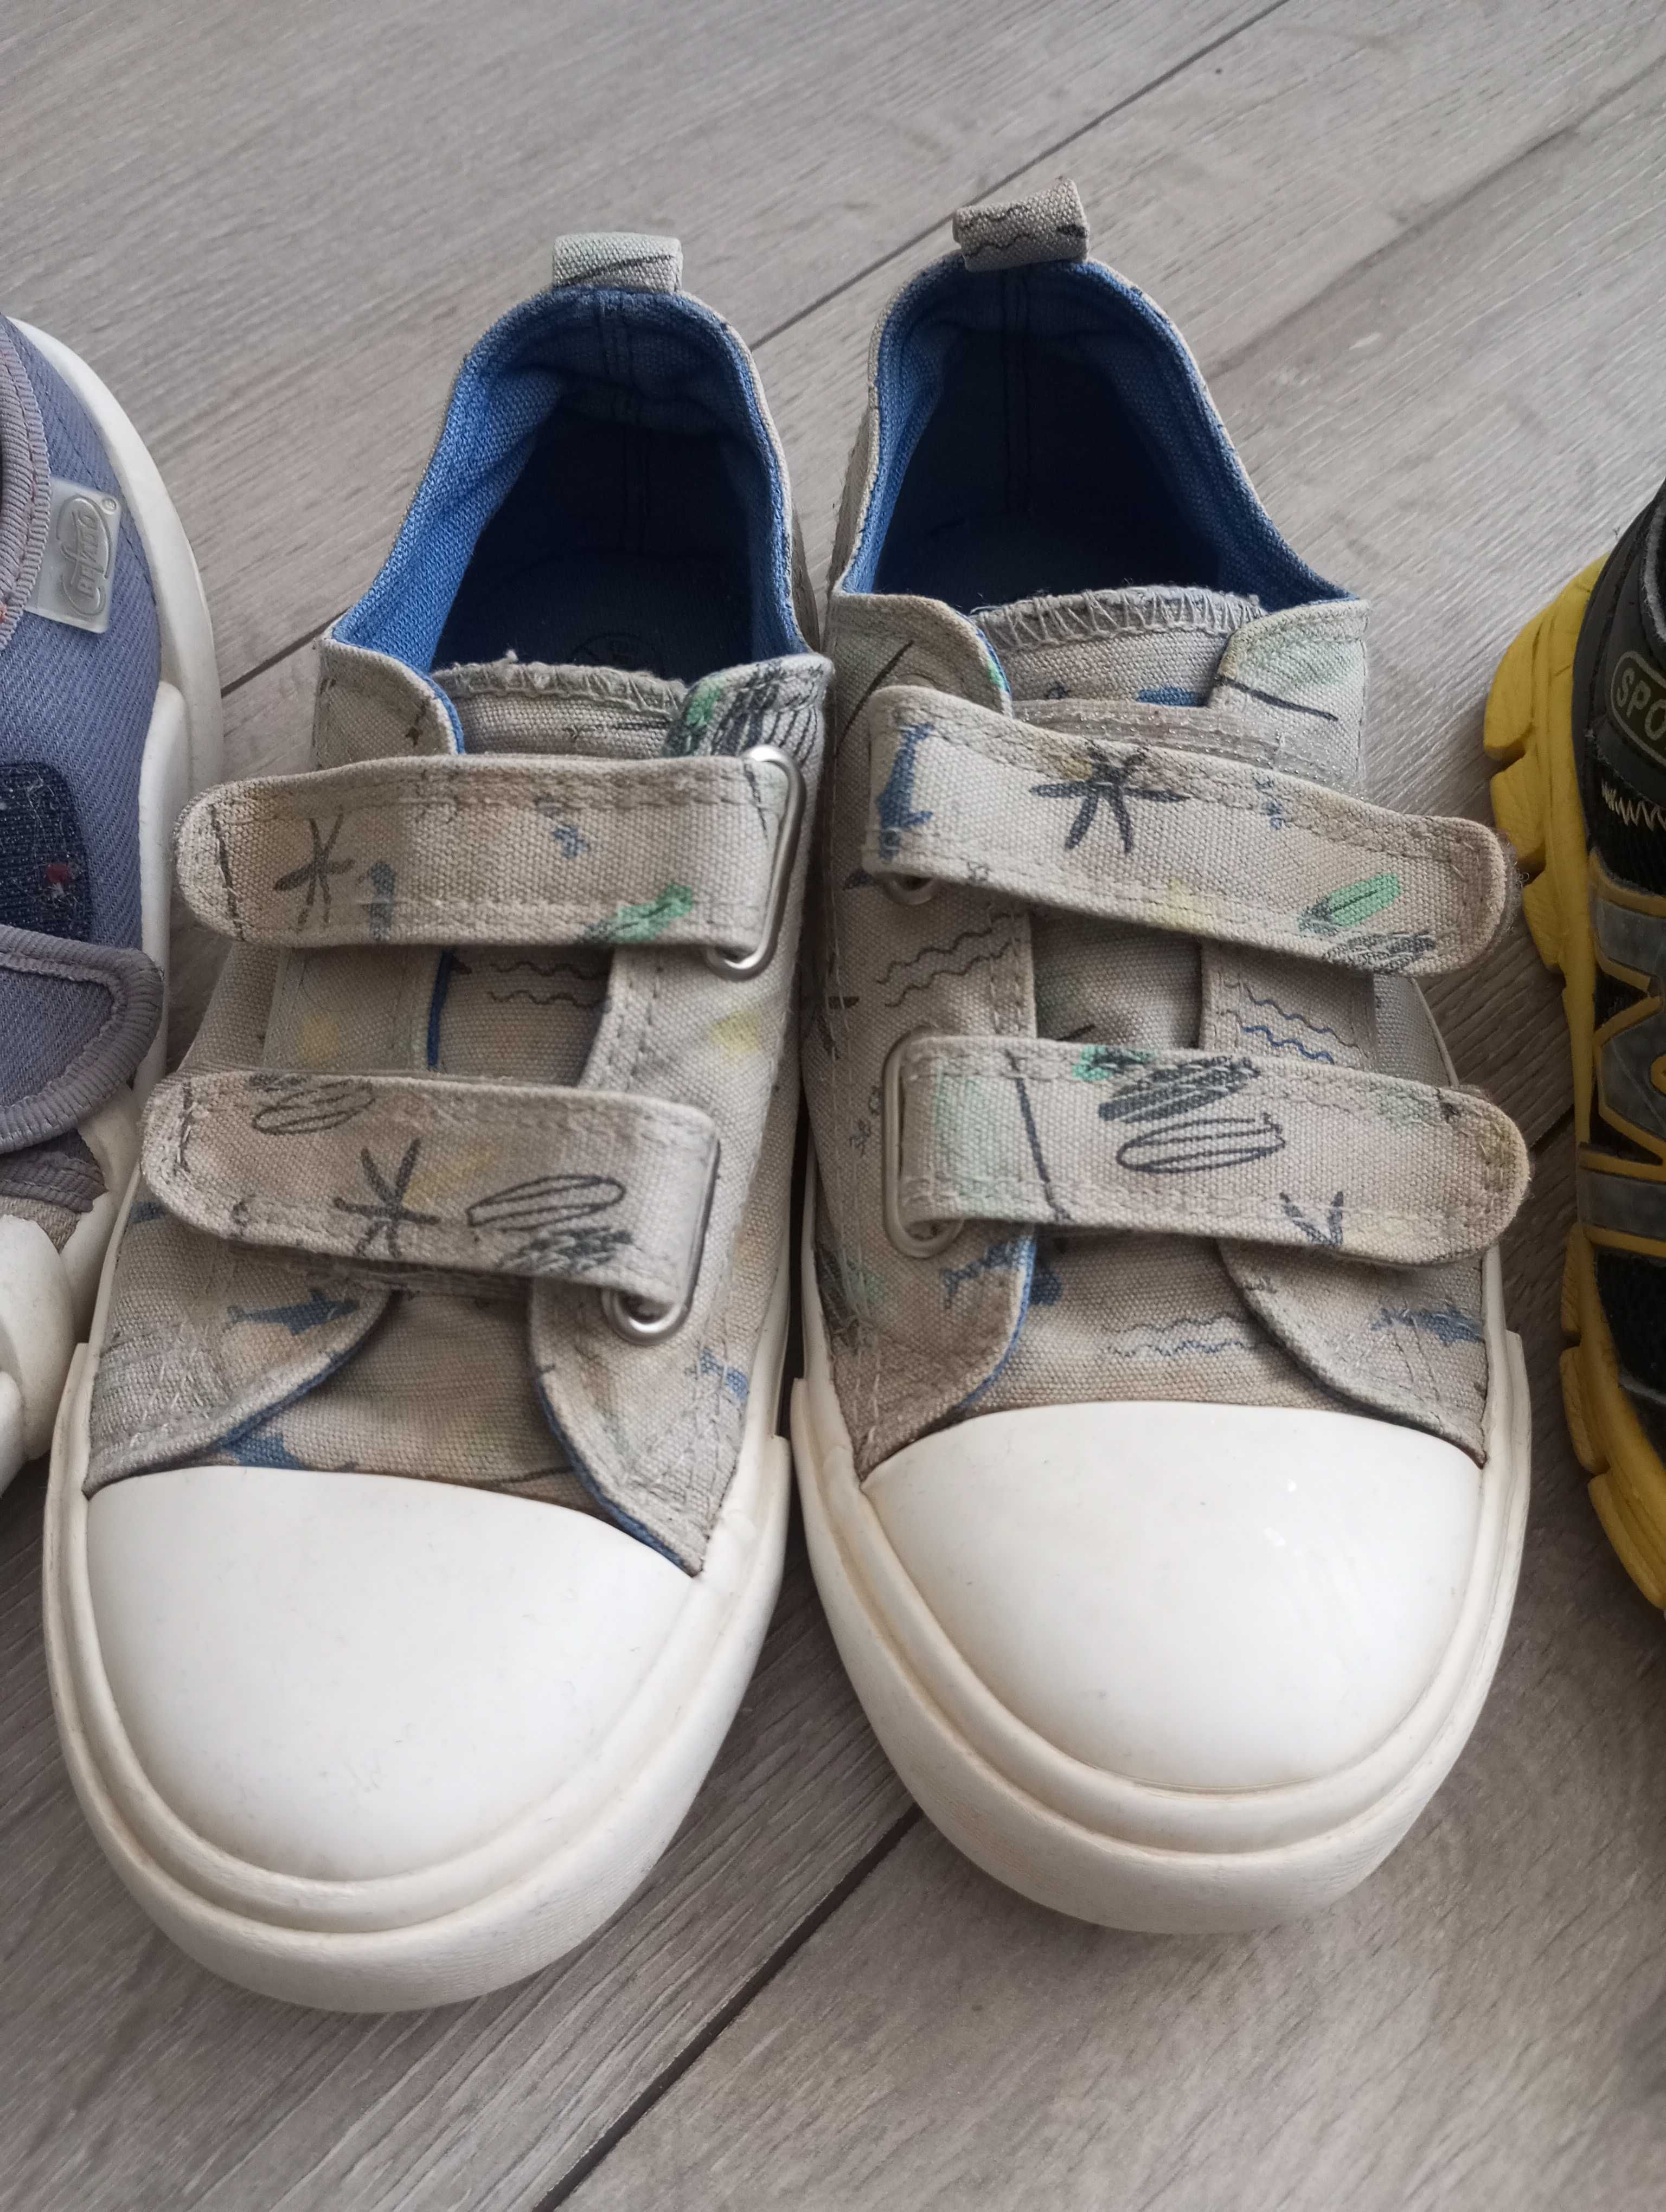 Buty chłopięce: Adidasy, trampki, kapcie roz. 30